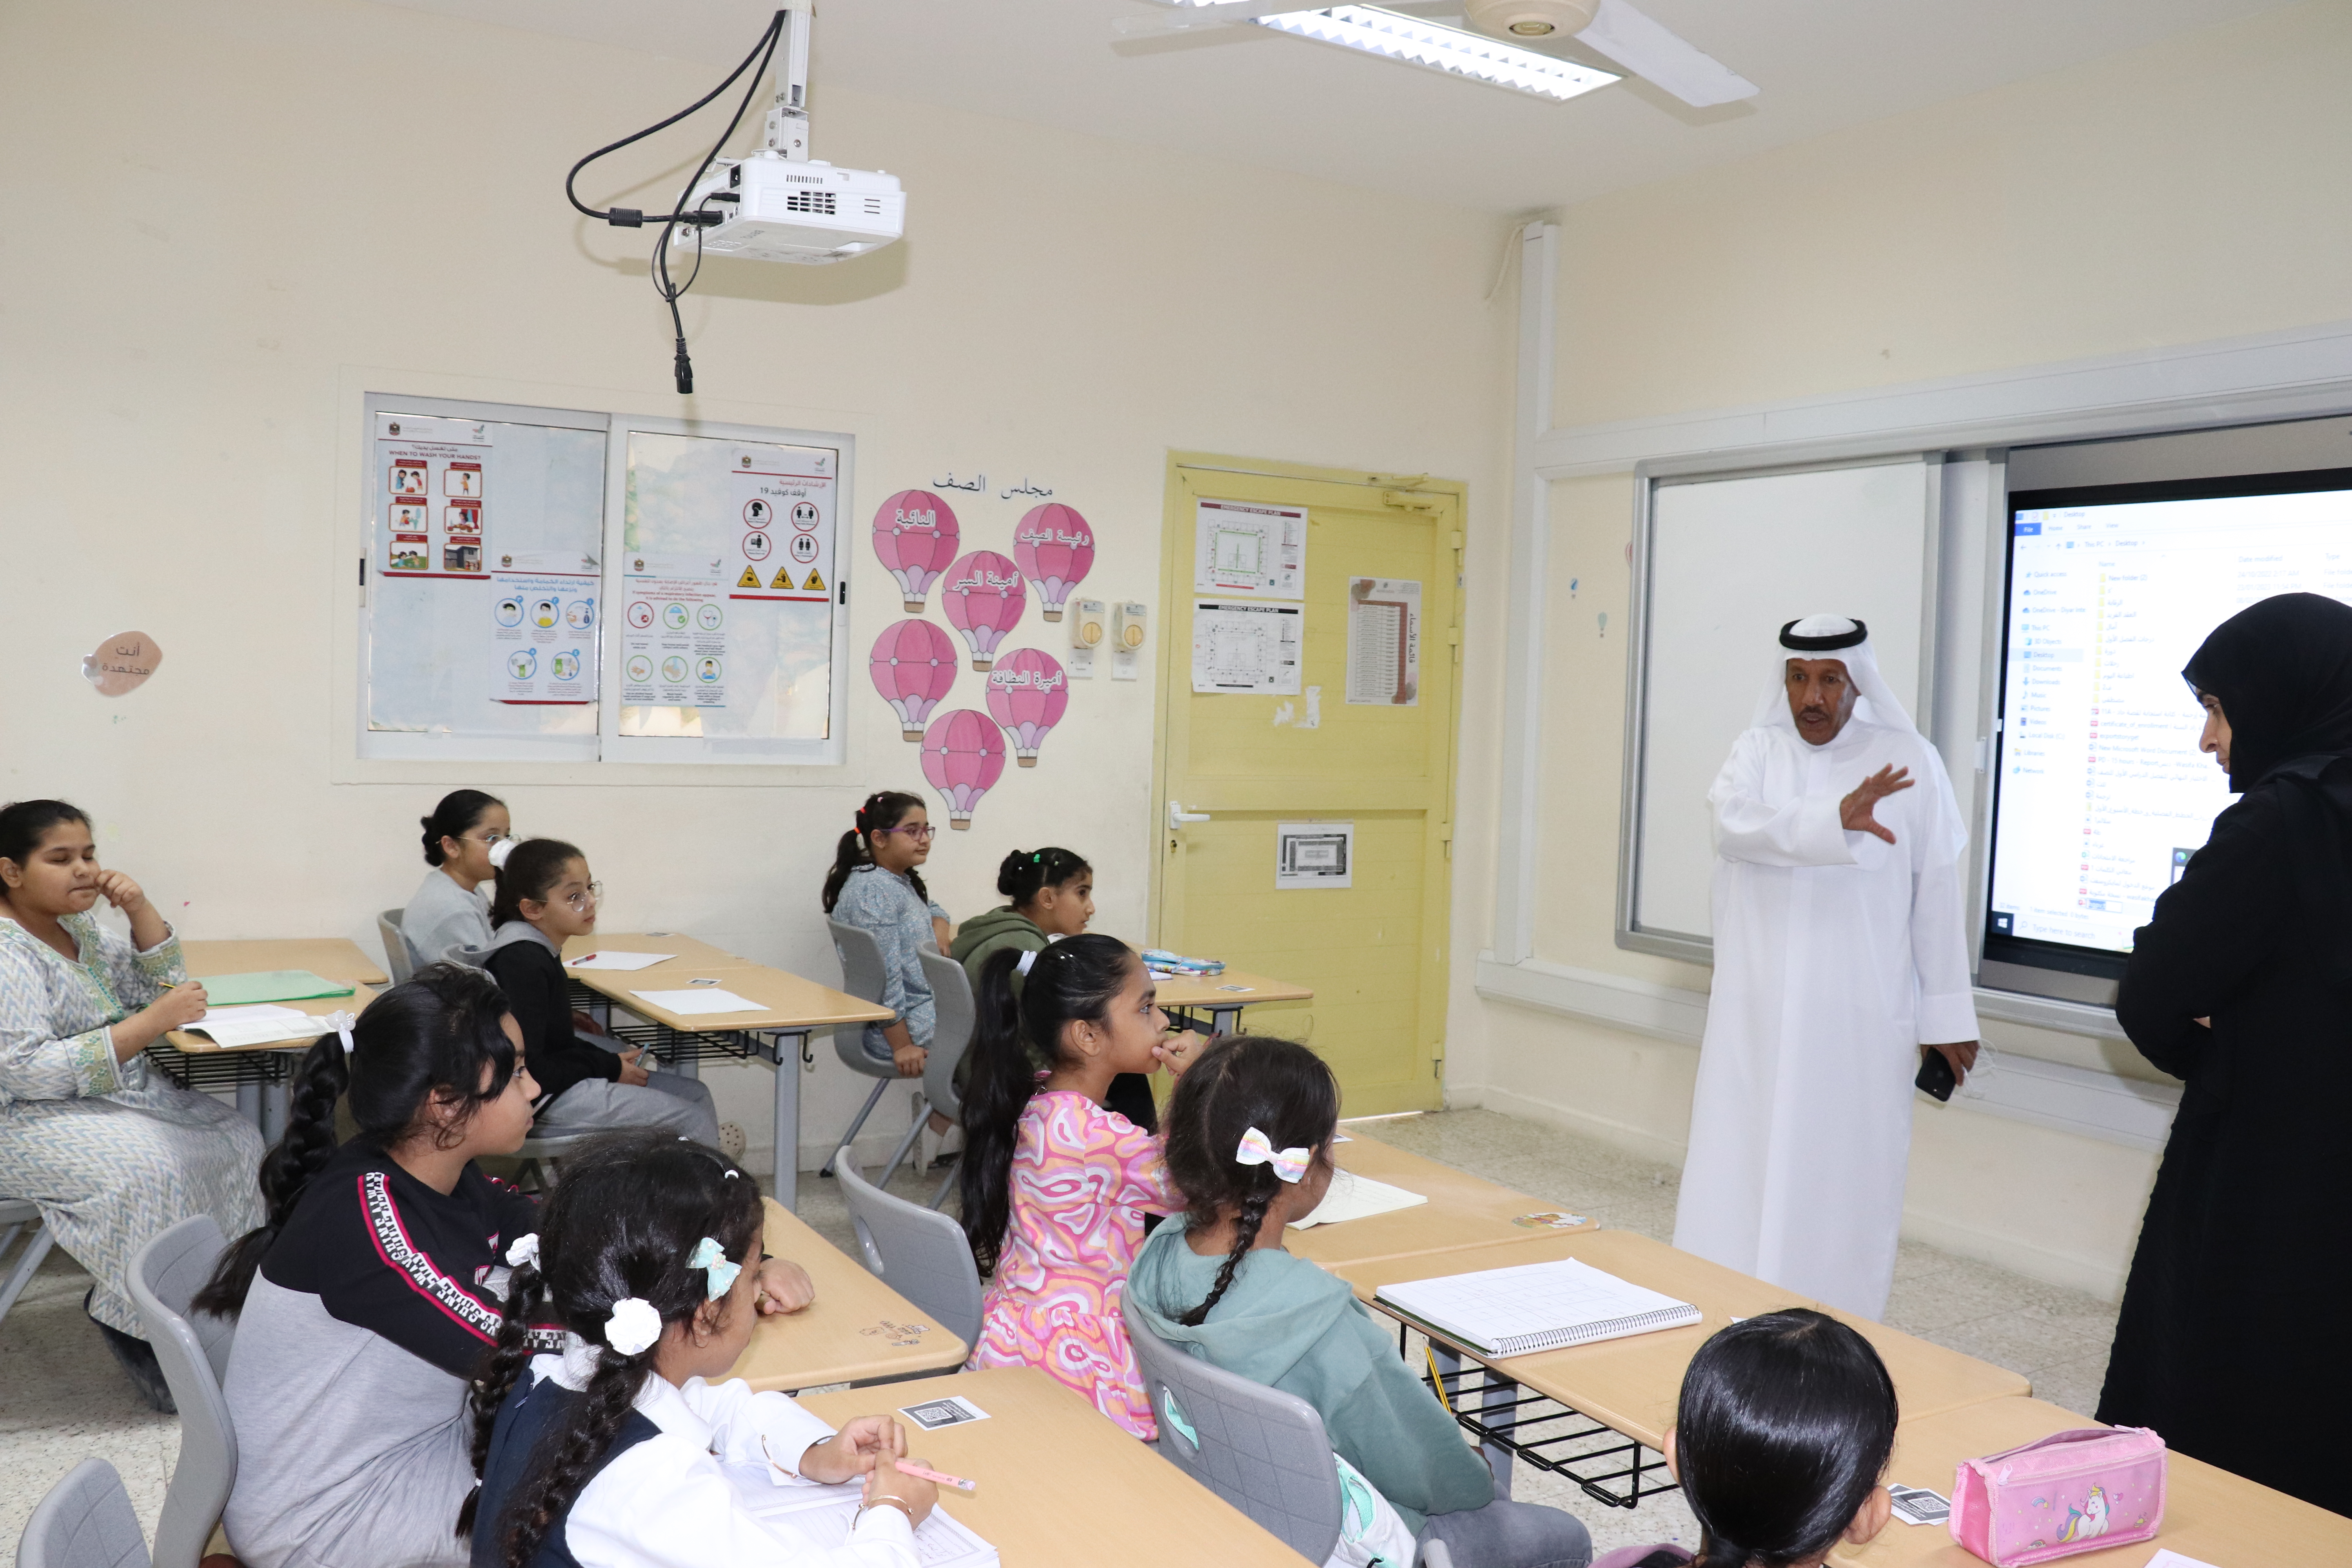 مجلس أولياء أمور الطلبة والطالبات في دبا الحصن يختتم برامجه في شهر القراءة بدورة تأهيل المستوى للطالبات في القراءة والكتابة 